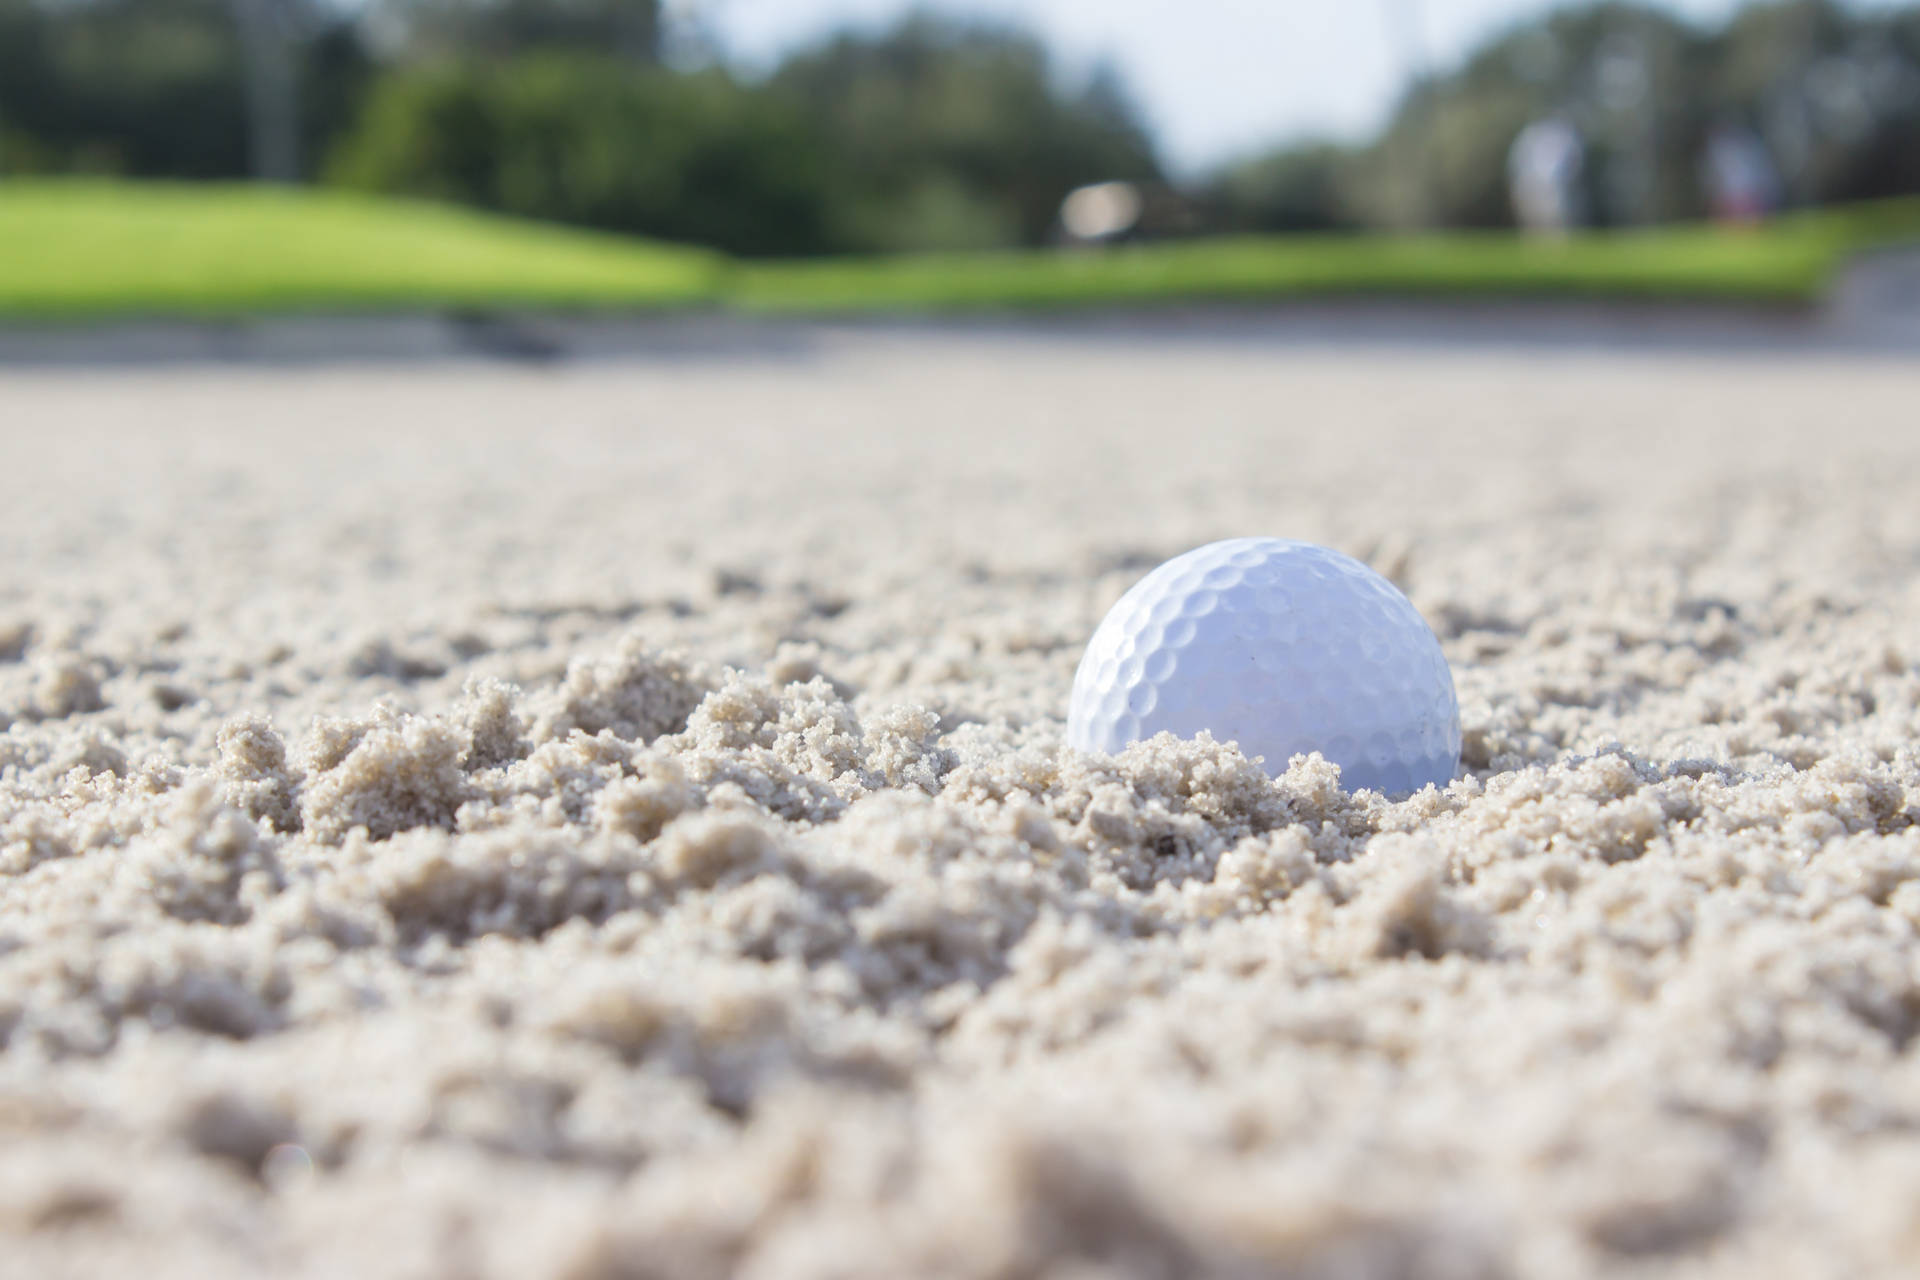 Ultra Hd Golf Ball Sand